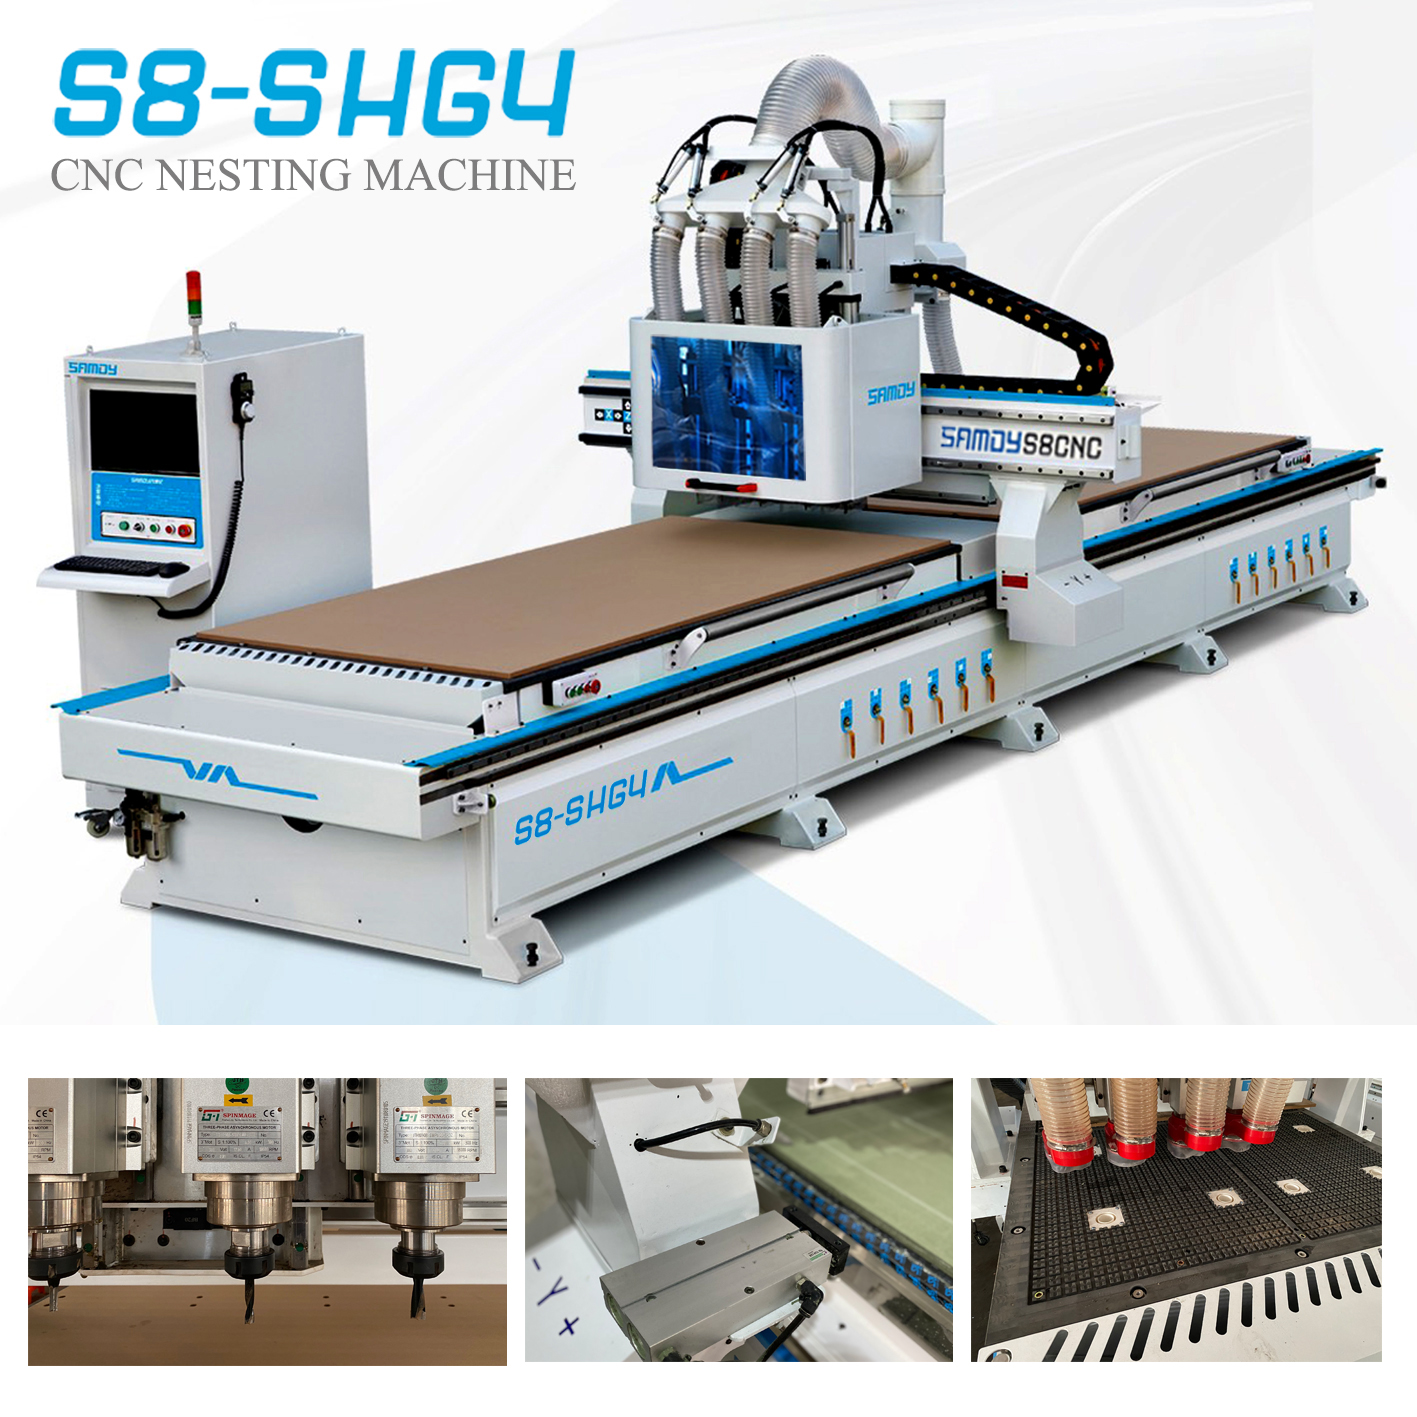 CNC Nesting S8 - SHG4